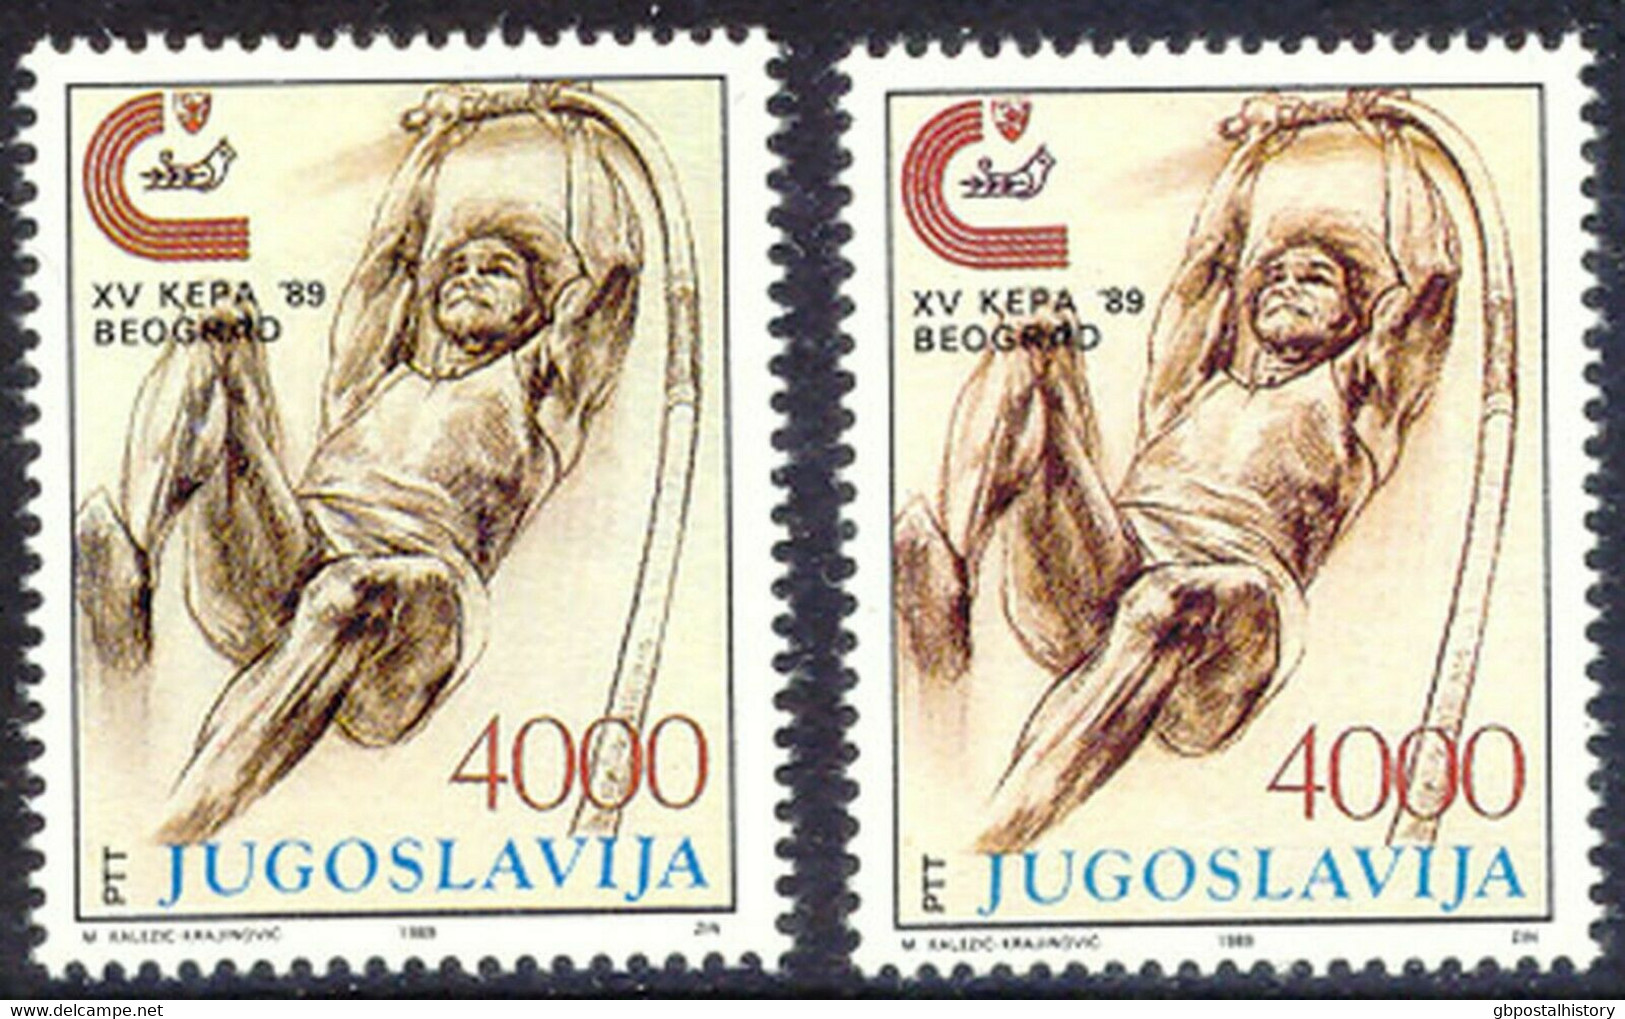 YUGOSLAVIA 1989 European Athletics Championships 4.000 (Din) U/M VARIETY MISSING COLOR - Geschnittene, Druckproben Und Abarten